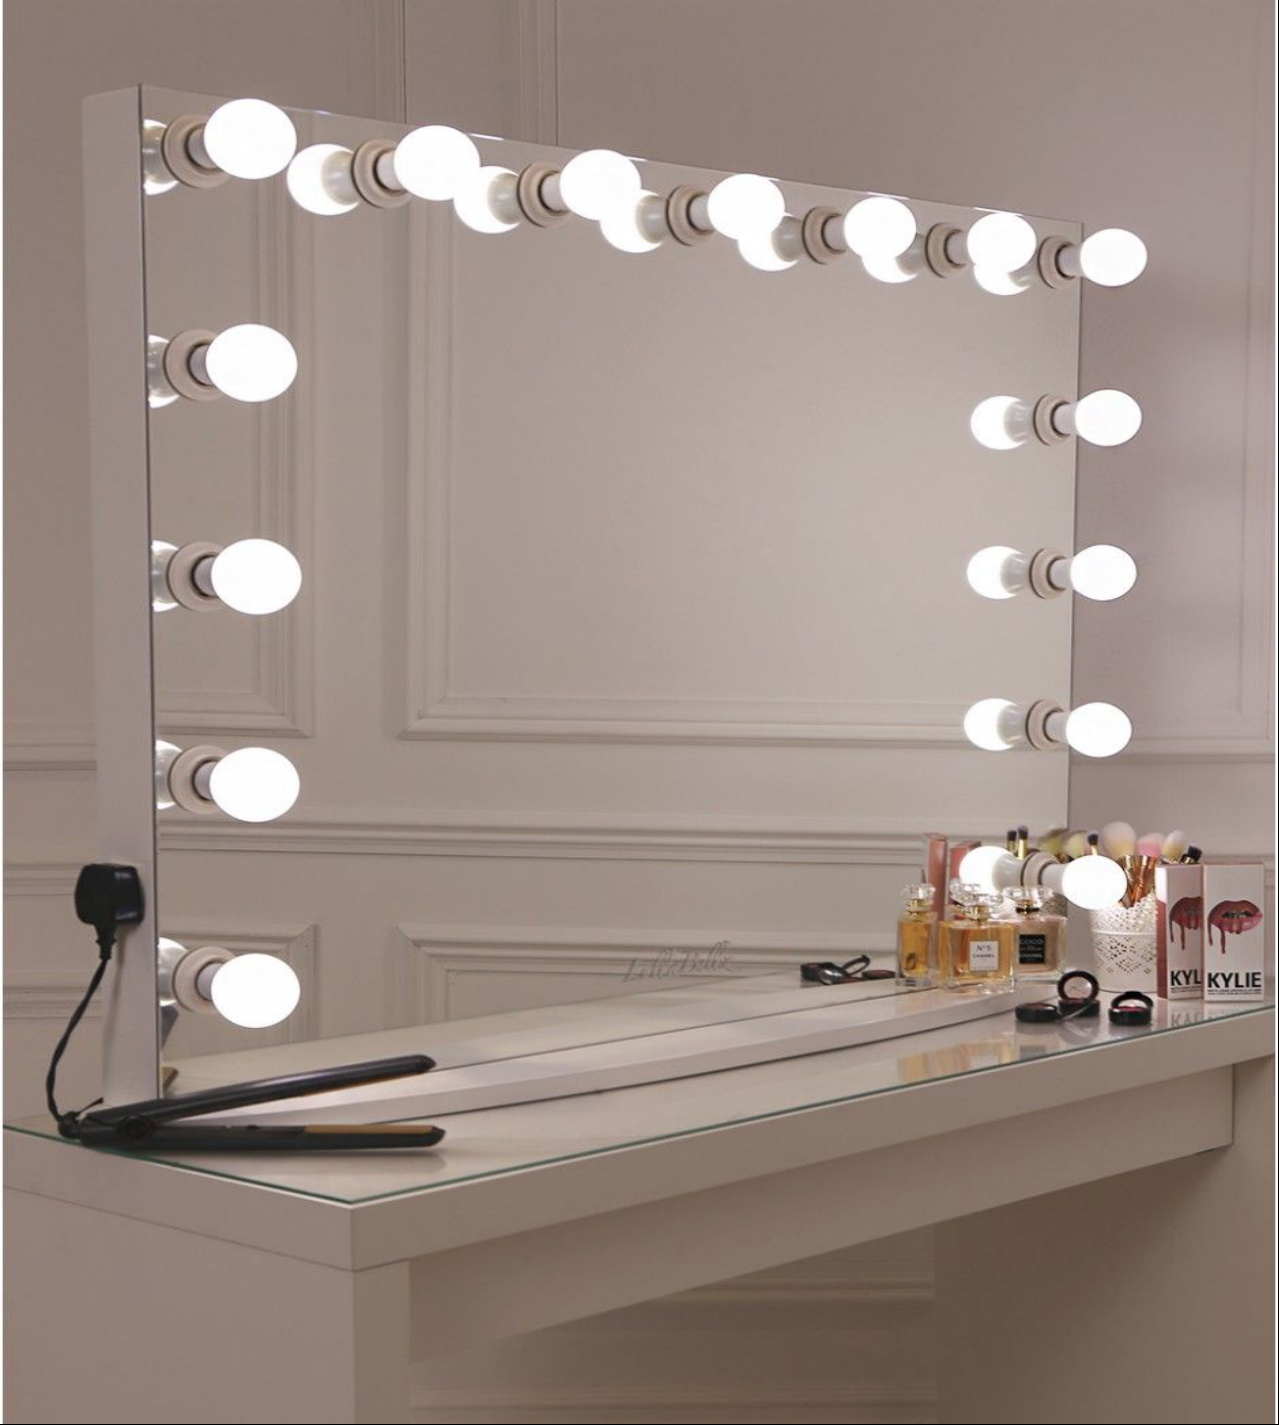 Professional Makeup Mirror With Lights, Makeup Mirror With Lights For Dressing Table